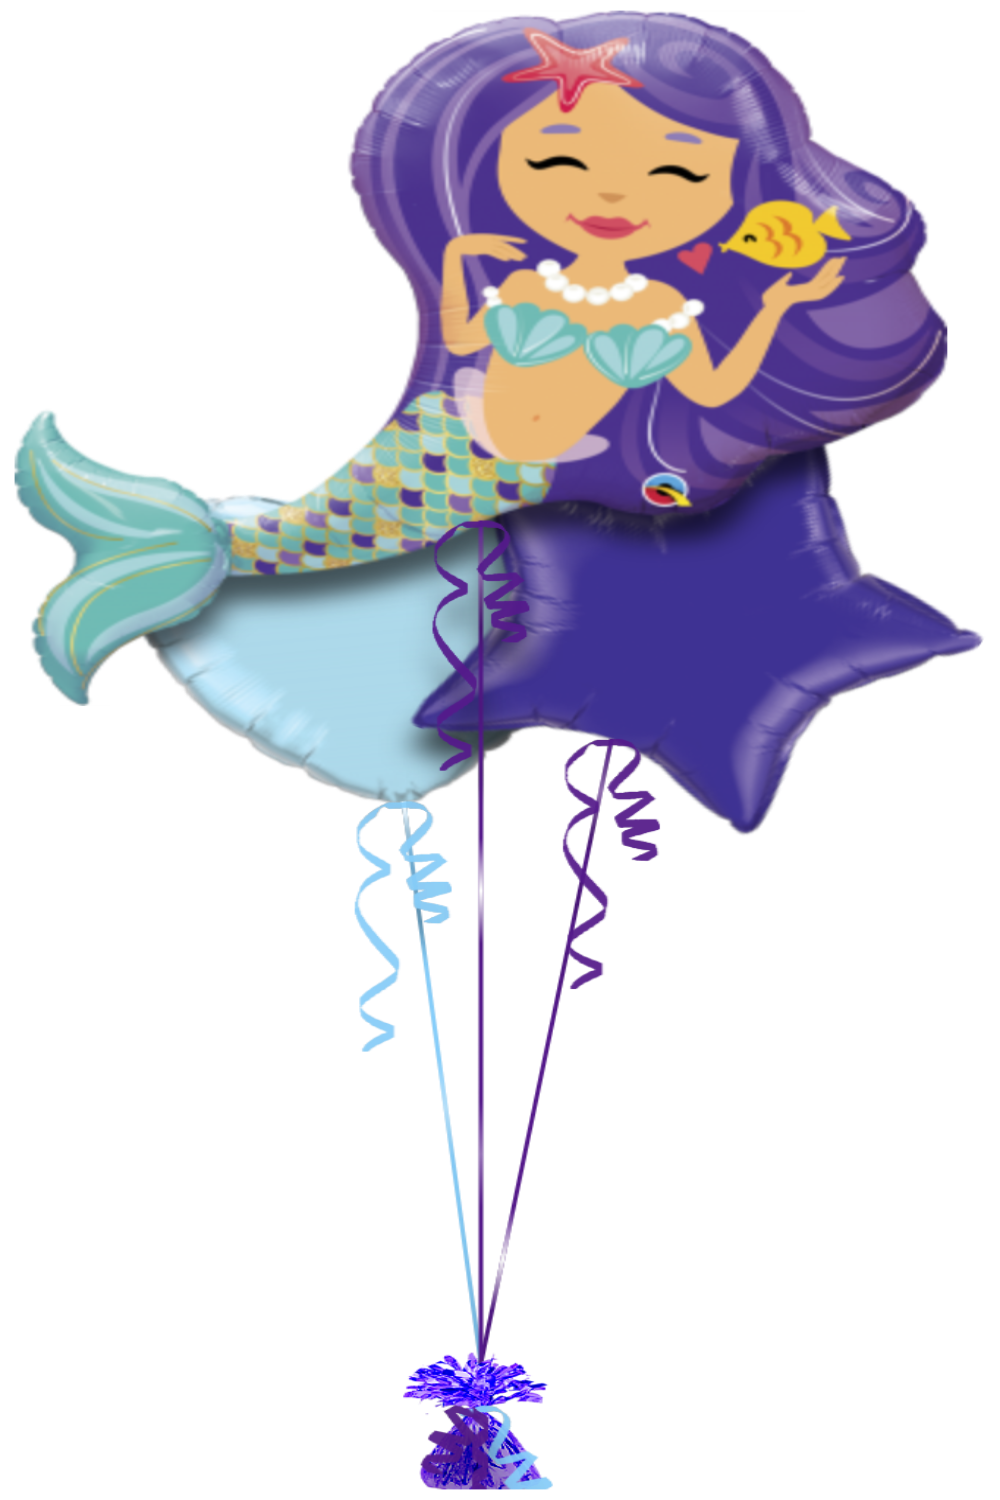 Mermaid Balloon 29"